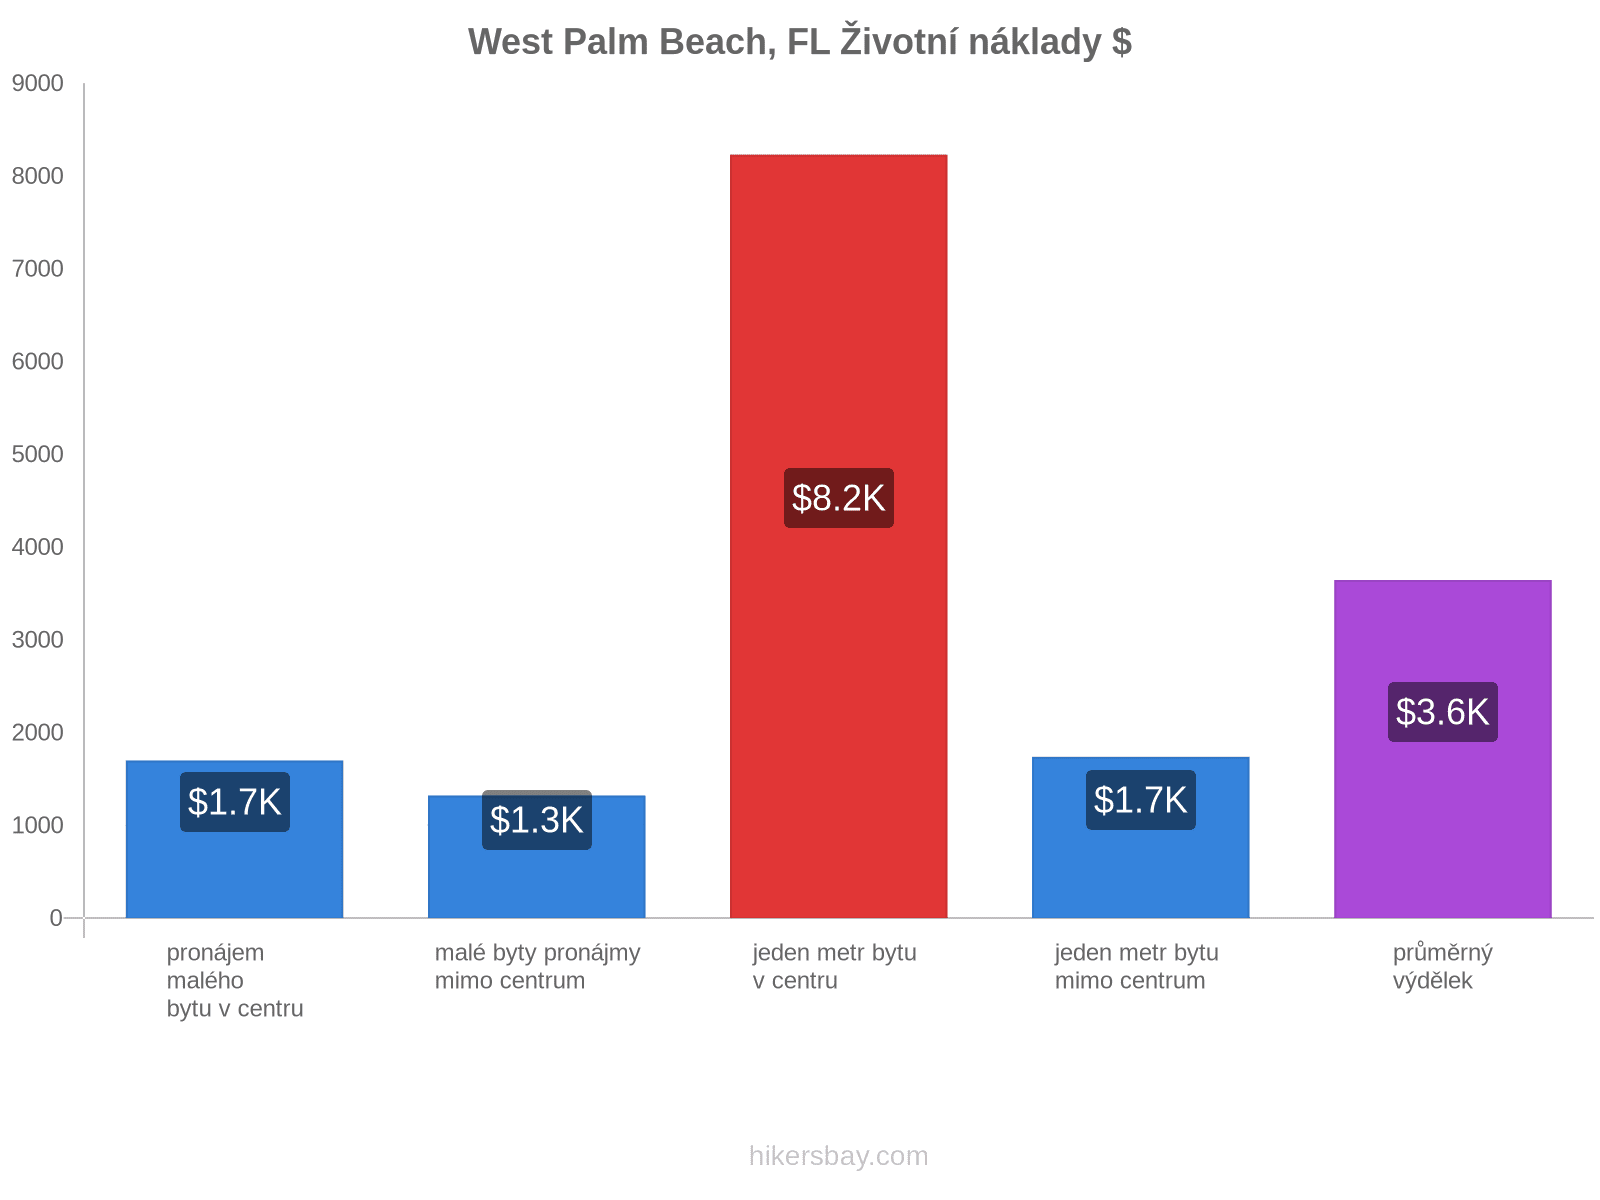 West Palm Beach, FL životní náklady hikersbay.com